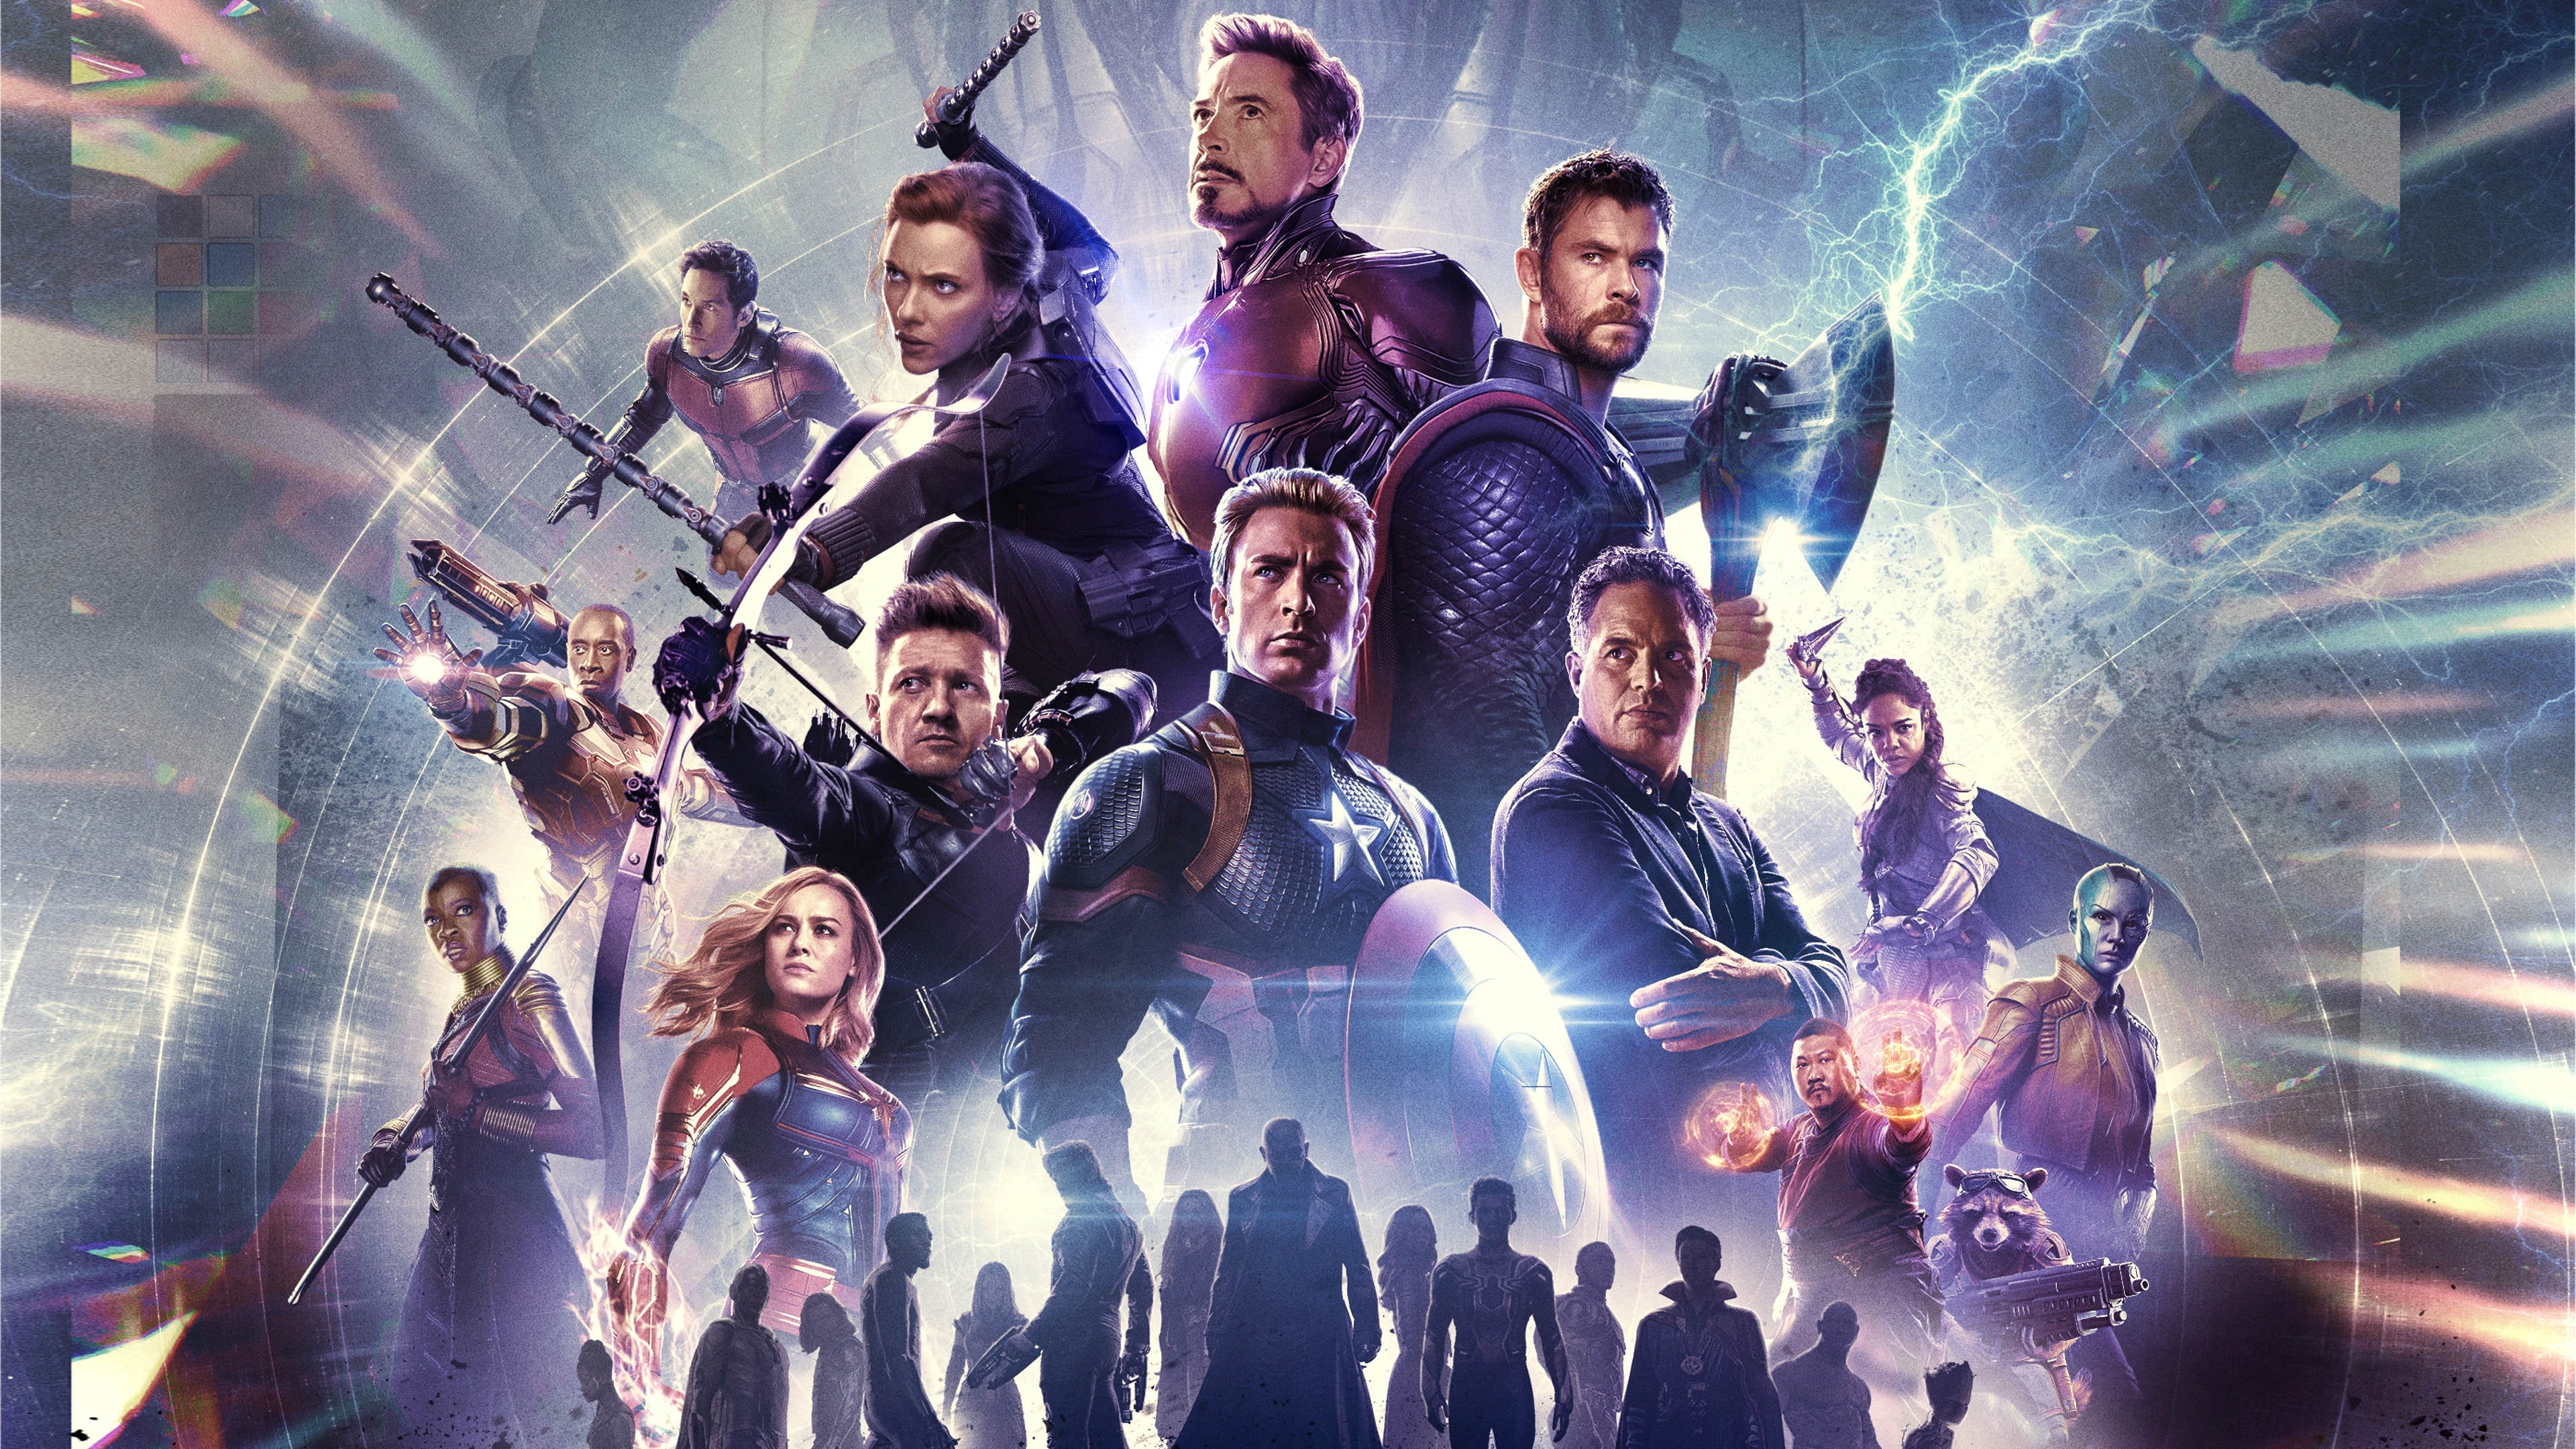 Biệt đội siêu anh hùng 4: hồi kết - Avengers: endgame